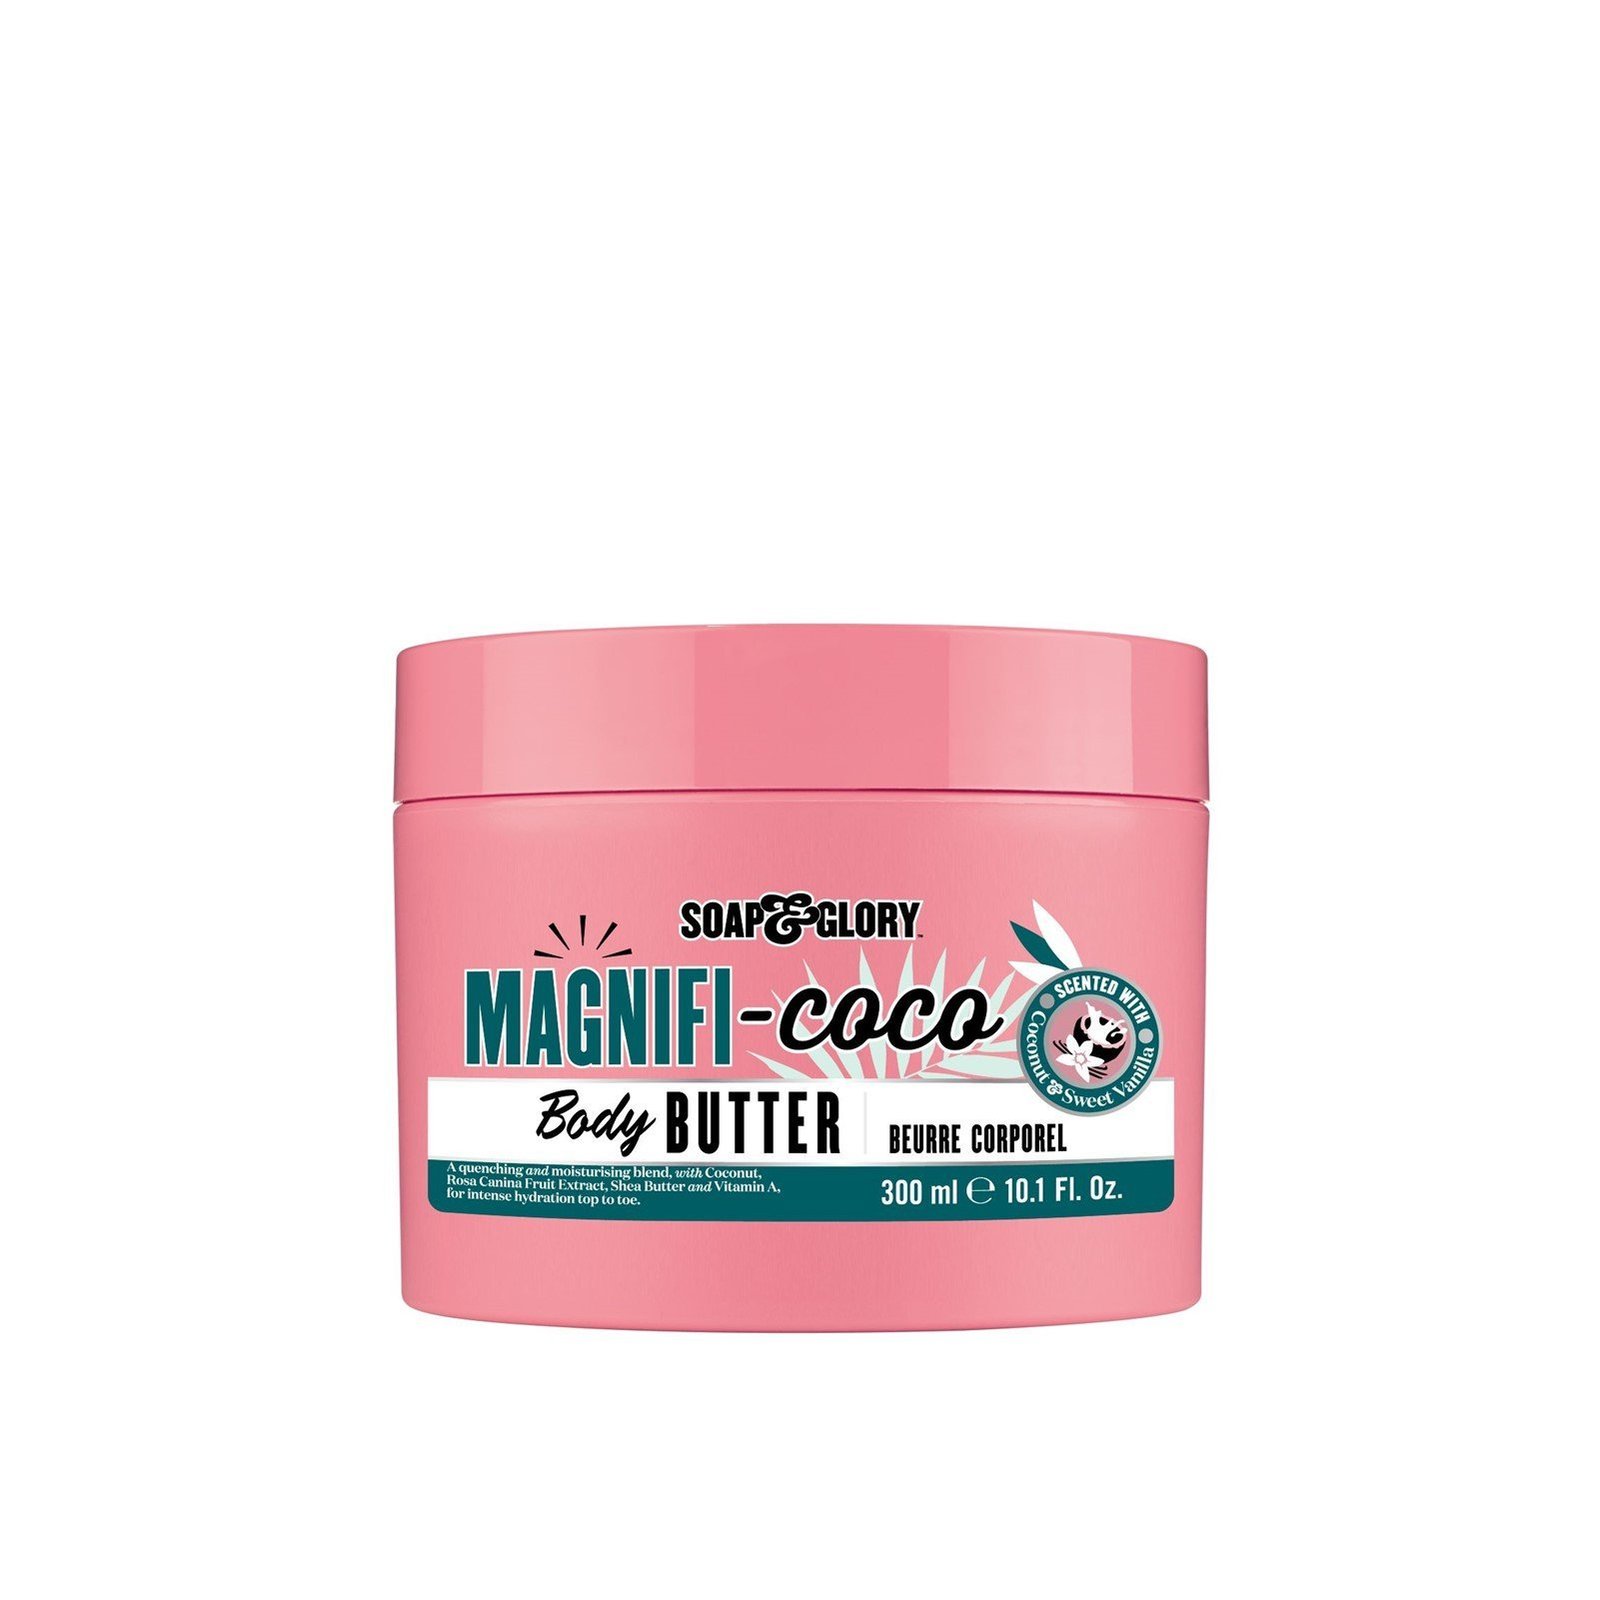 Soap & Glory Magnifi-coco Body Butter 300ml (10.1 fl oz)